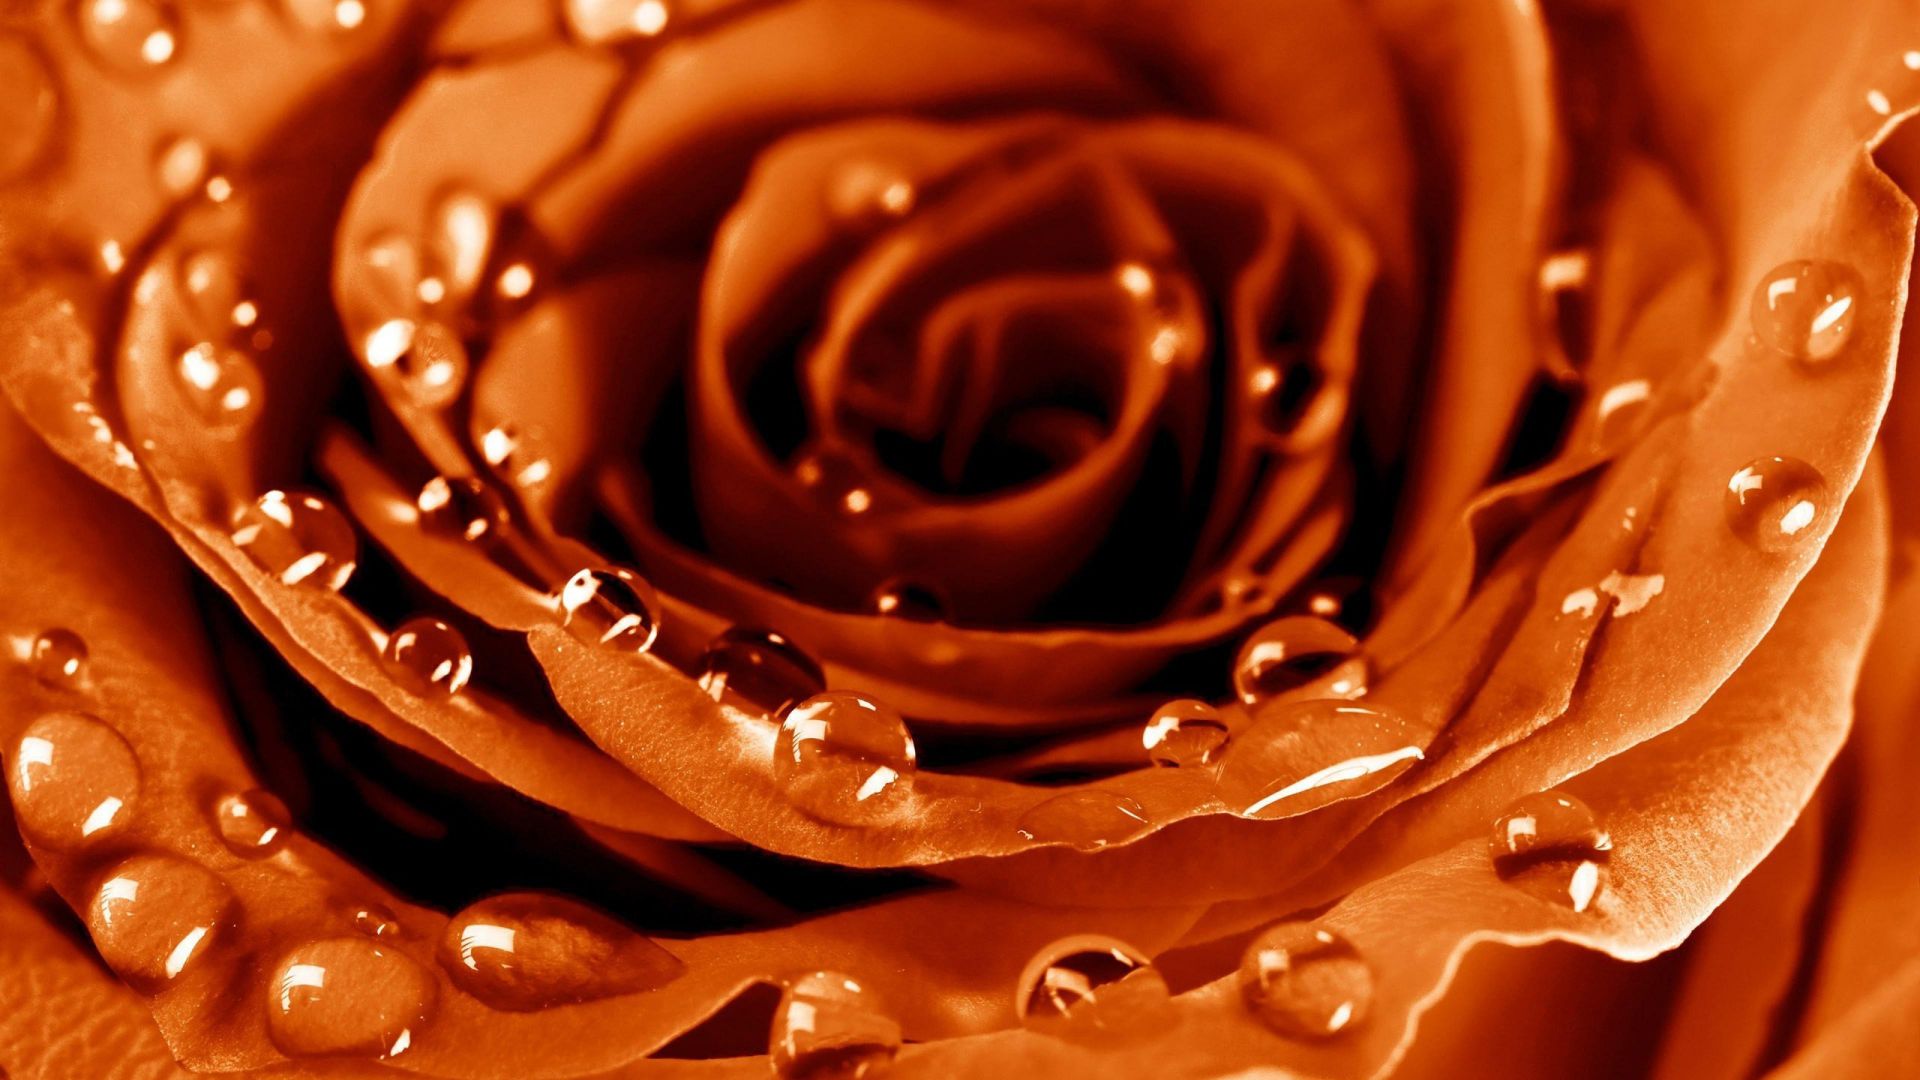 Роза, 4k, HD, капли, роса, цветок, Rose, 4k, HD wallpaper, drops, dew, flower (horizontal)